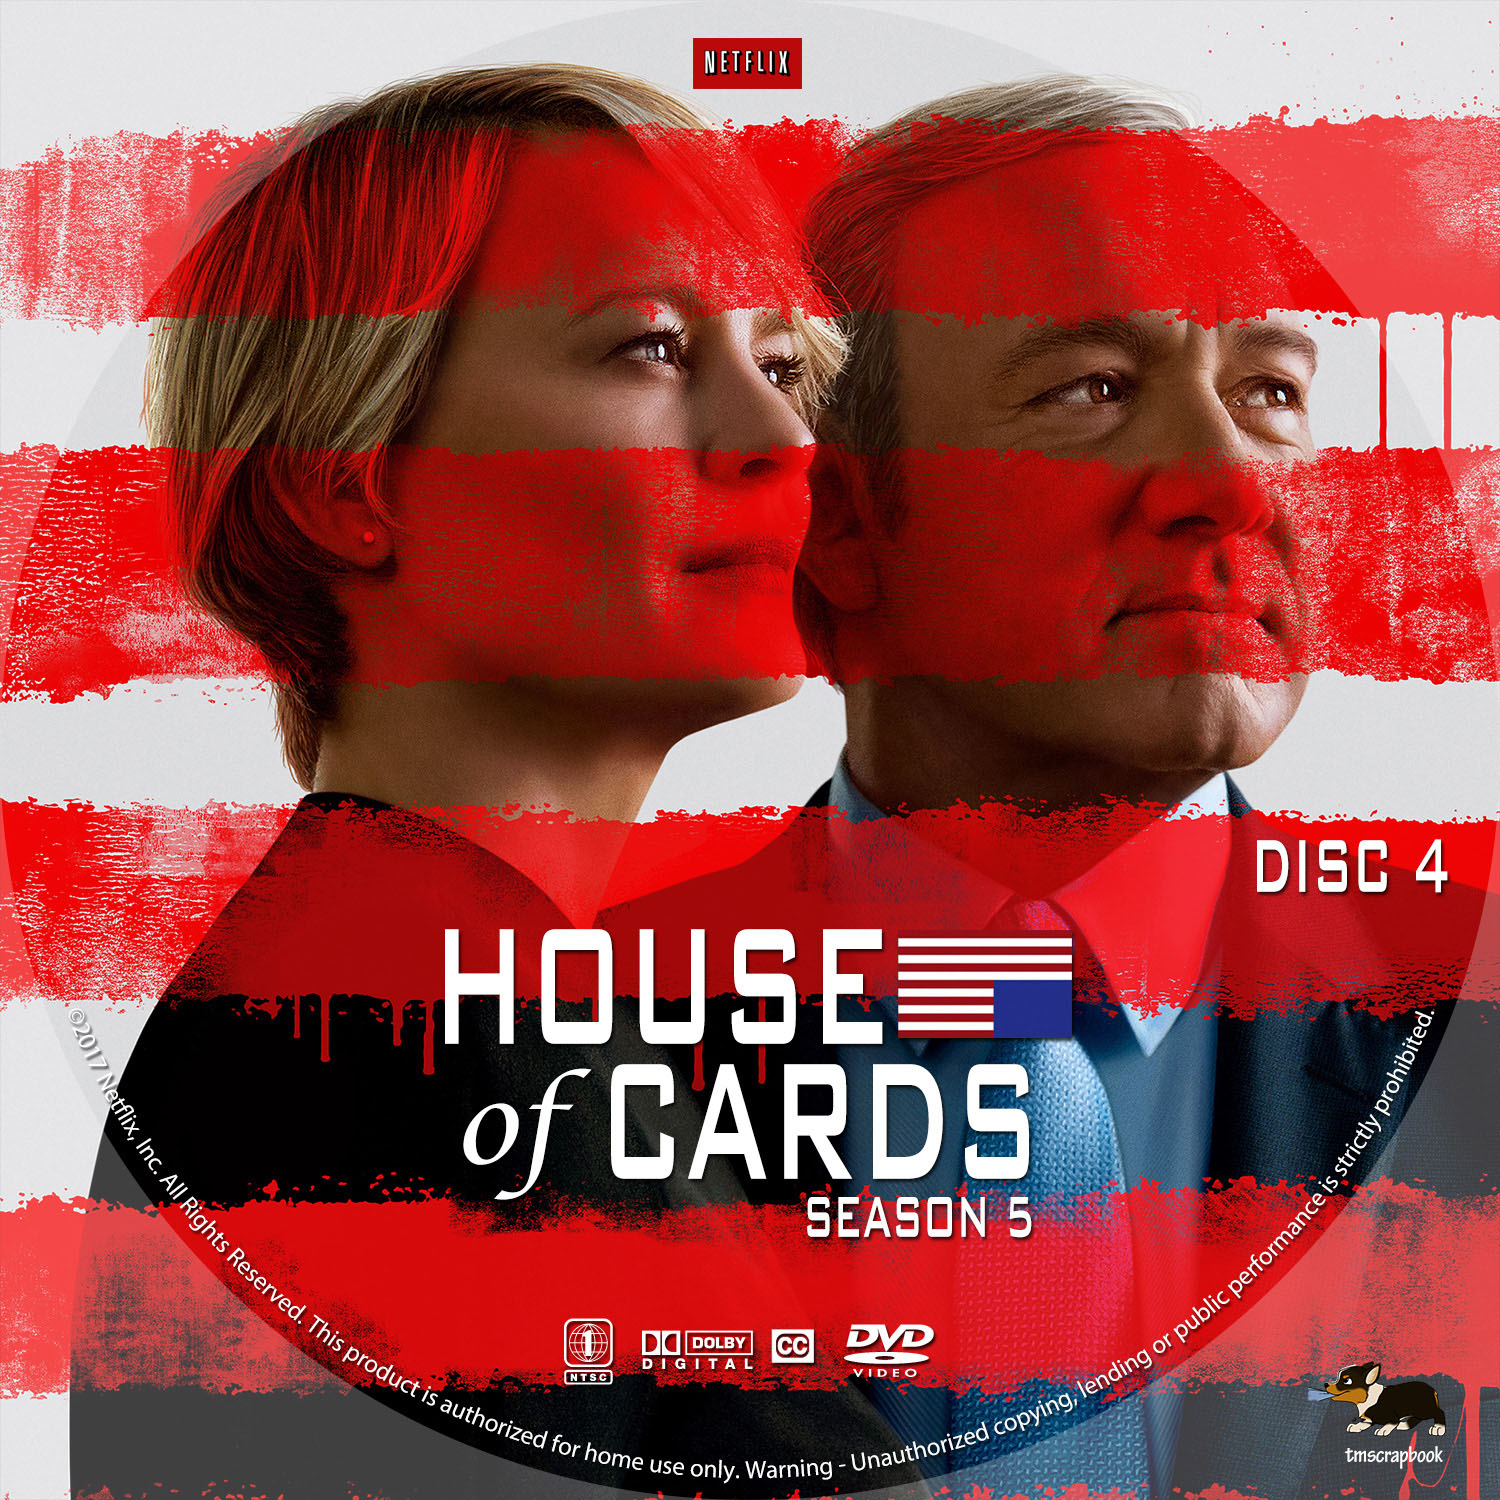 House of Cards Saison 5 DISC 4 custom